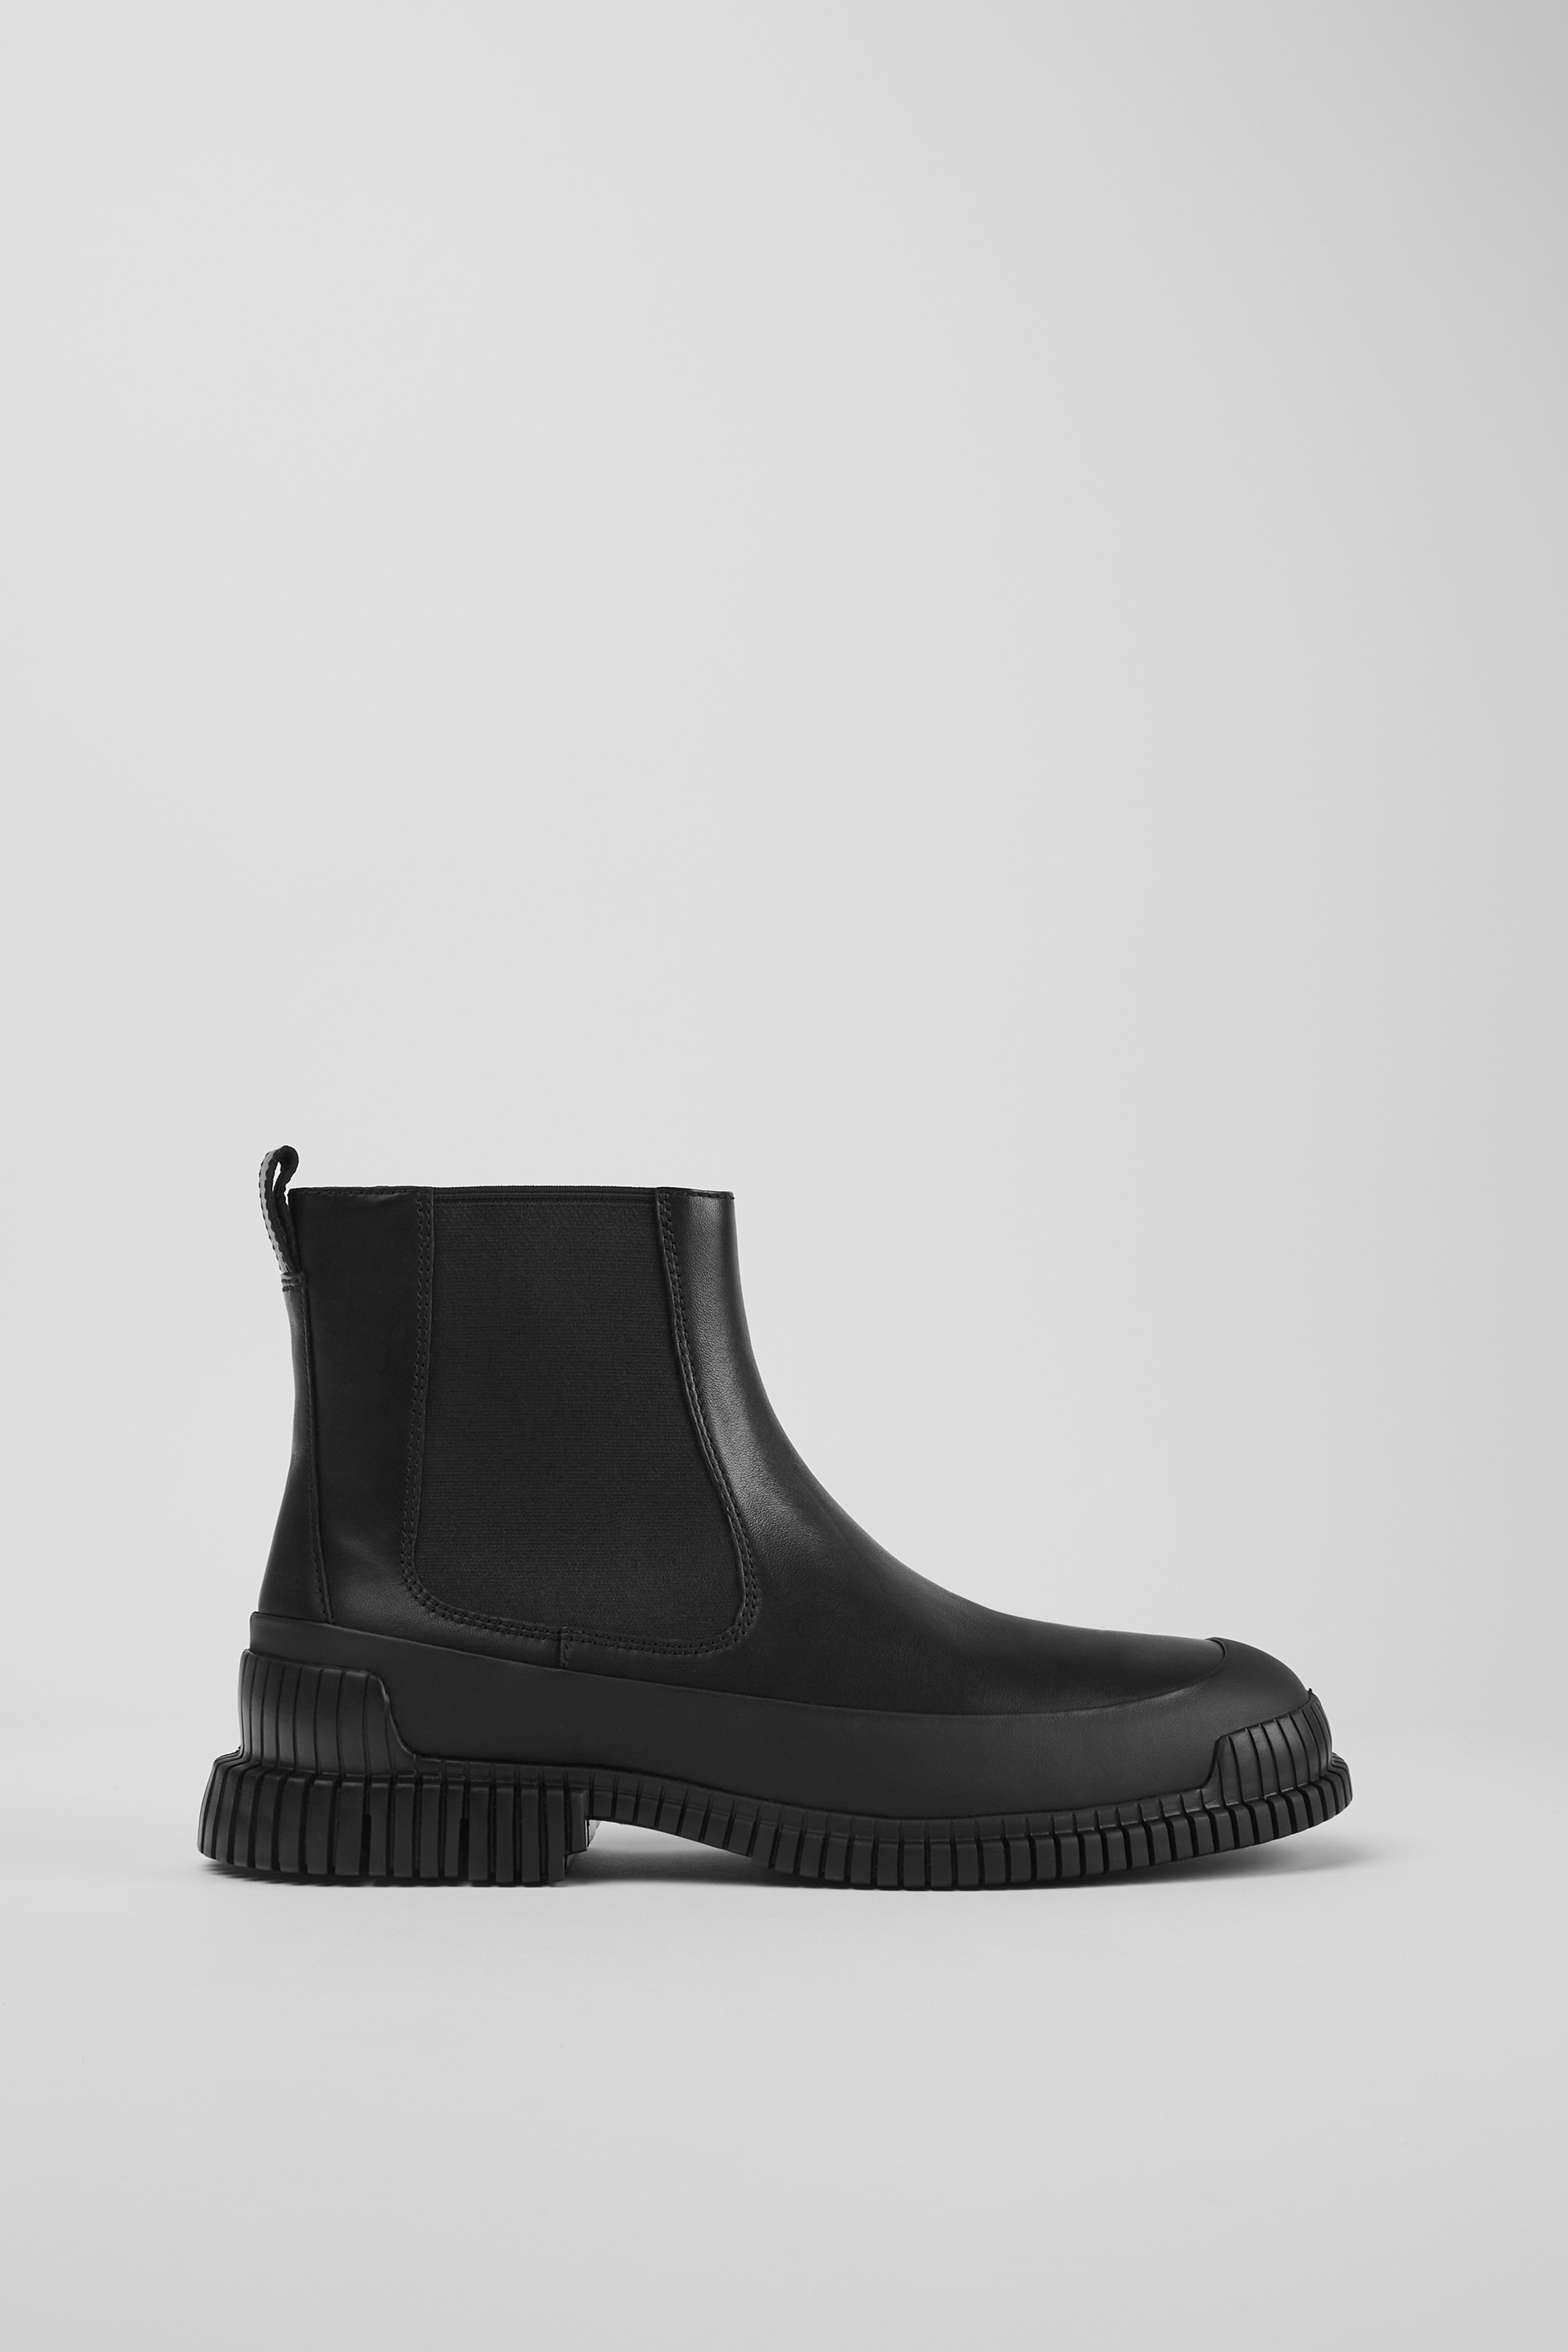 foran generøsitet Være Pix Black Ankle Boots for Men - Autumn/Winter collection - Camper USA